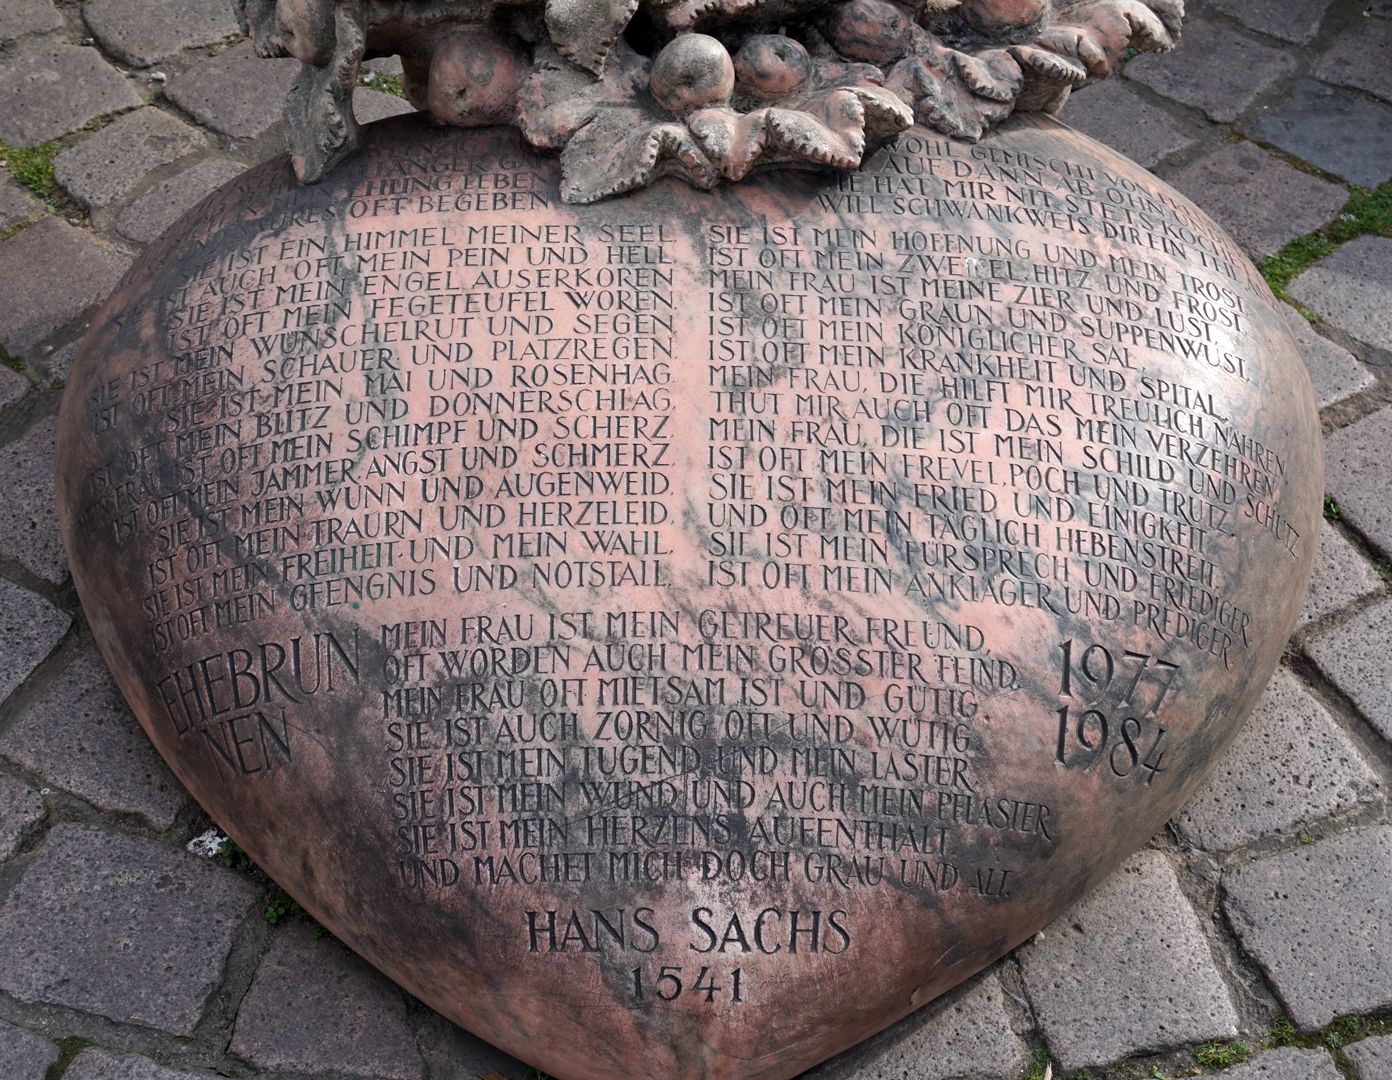 Ehekarussell / Hans-Sachs-Brunnen Herz aus rotem Mamor (Portugal, Estremoz) mit dem Gedicht über das "bittersüße eheliche Leben" von Hans Sachs